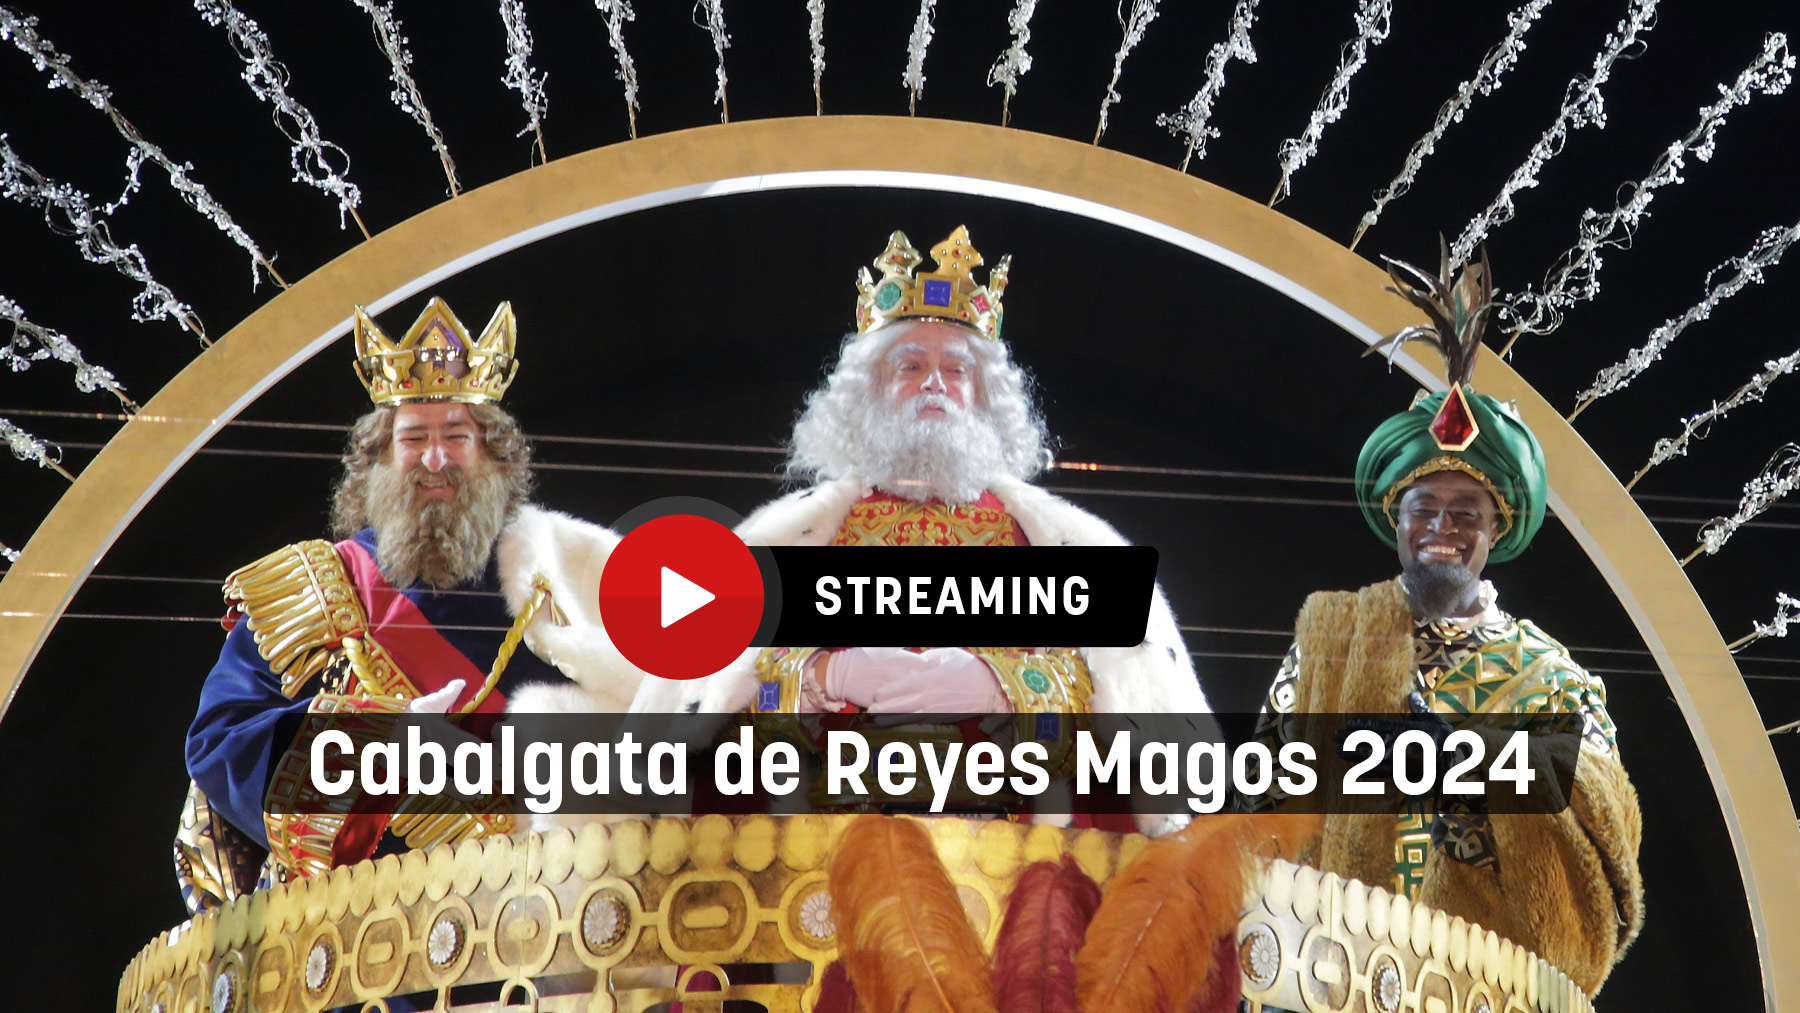 Cabalgata de Reyes Magos 2024 en Madrid en directo